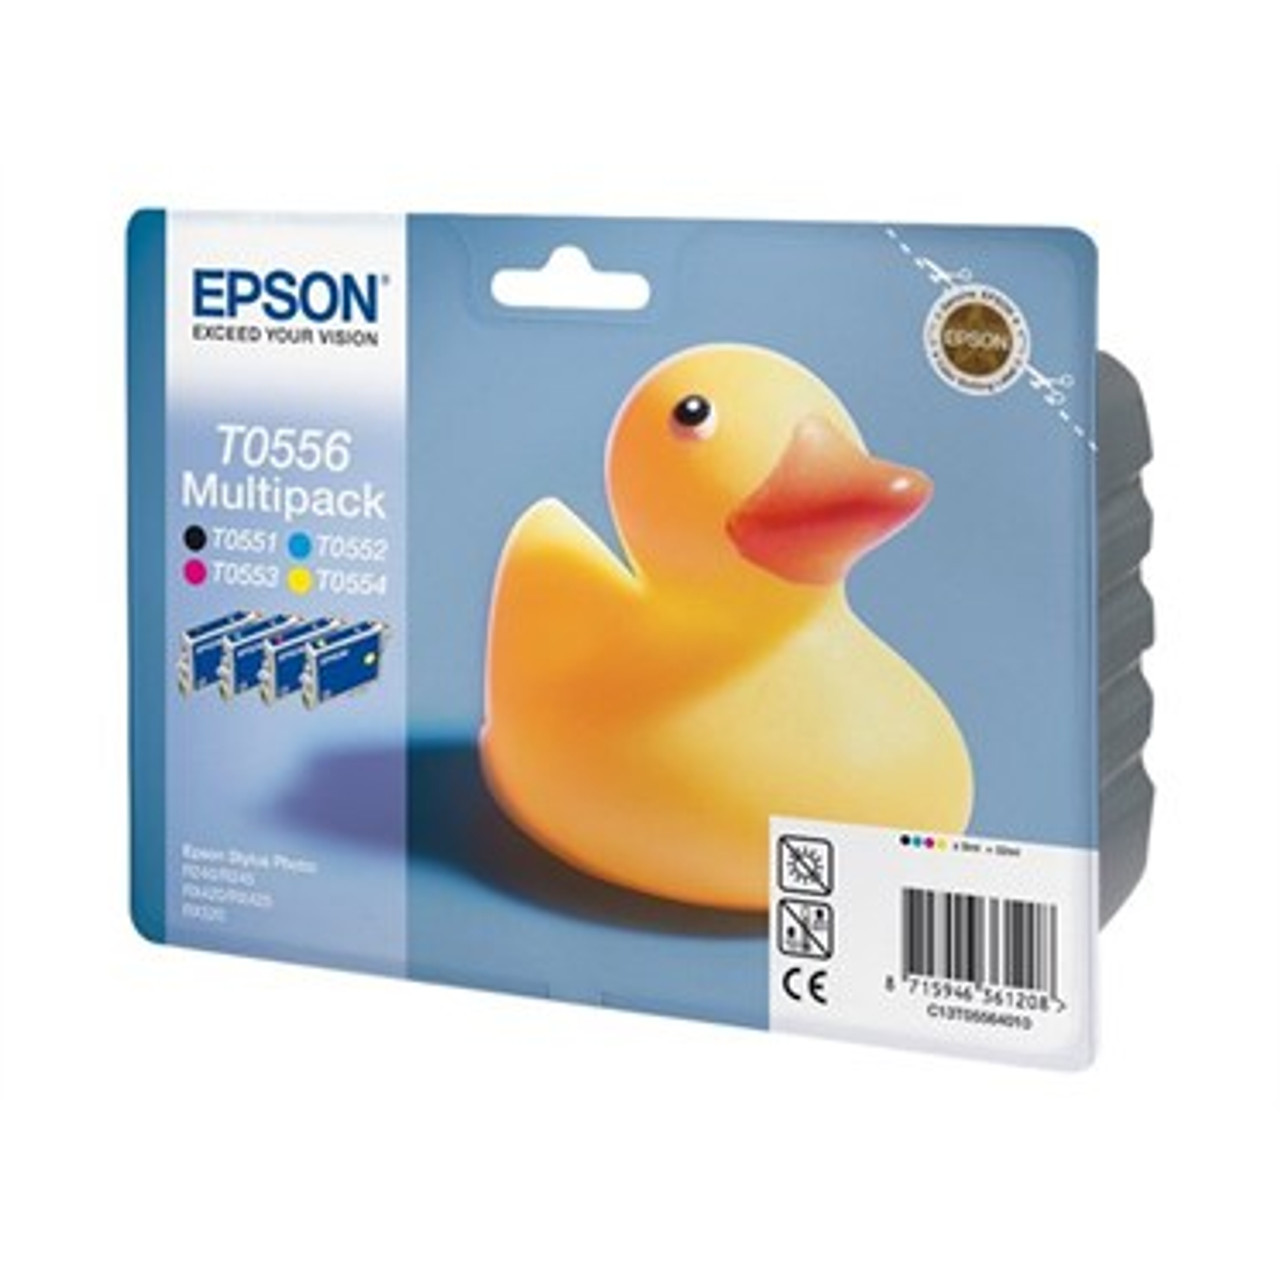 4 Colour Epson T0556 Original Ink Cartridge Multipack (T0551 T0552 T0553 T0554 C13t05564010)